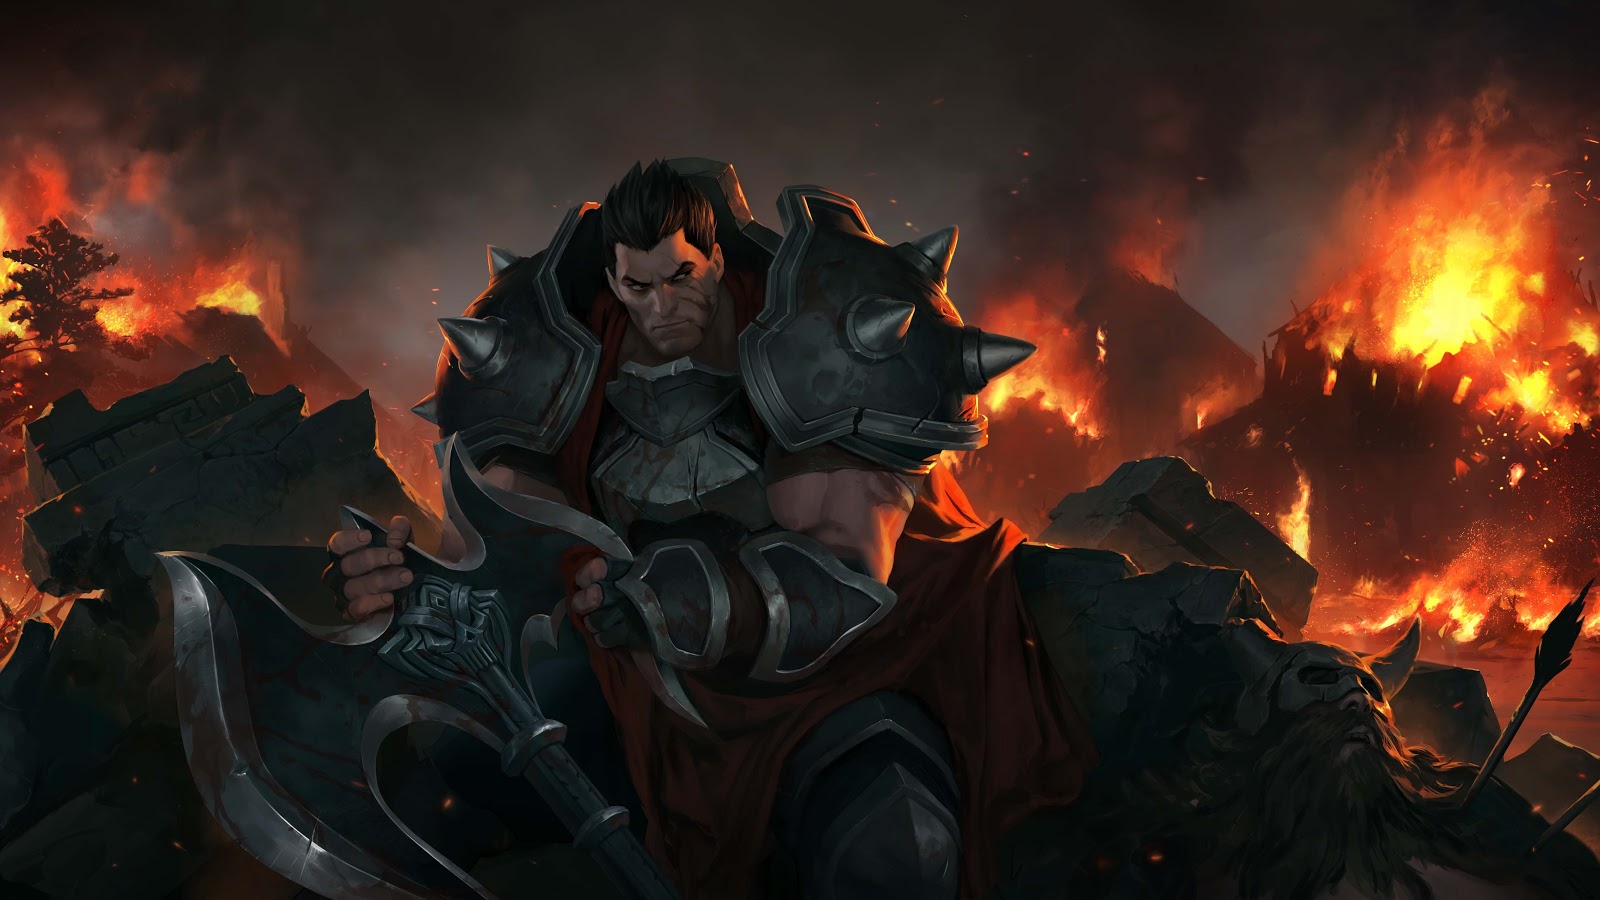 Дариус сидит на каменных обломках, держа в руках топор, и оглядывается на бушующий пожар.